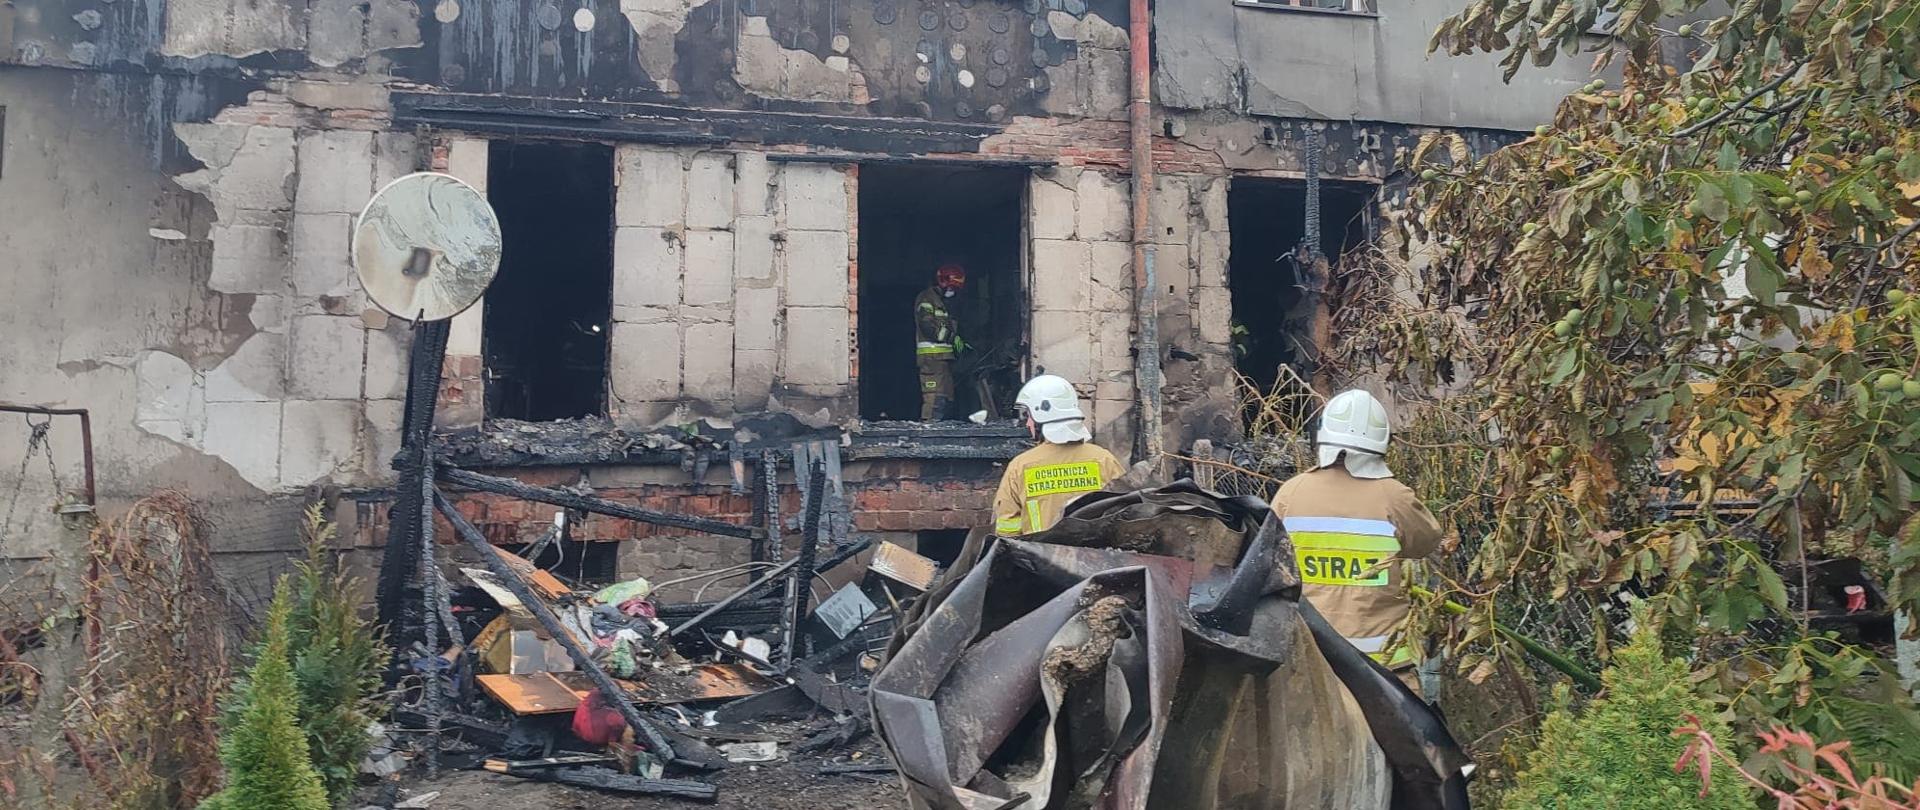 Zniszczony przez pożar blok mieszkalny. Wśród pogorzeliska widać 3 strażaków w ubraniach specjalnych.